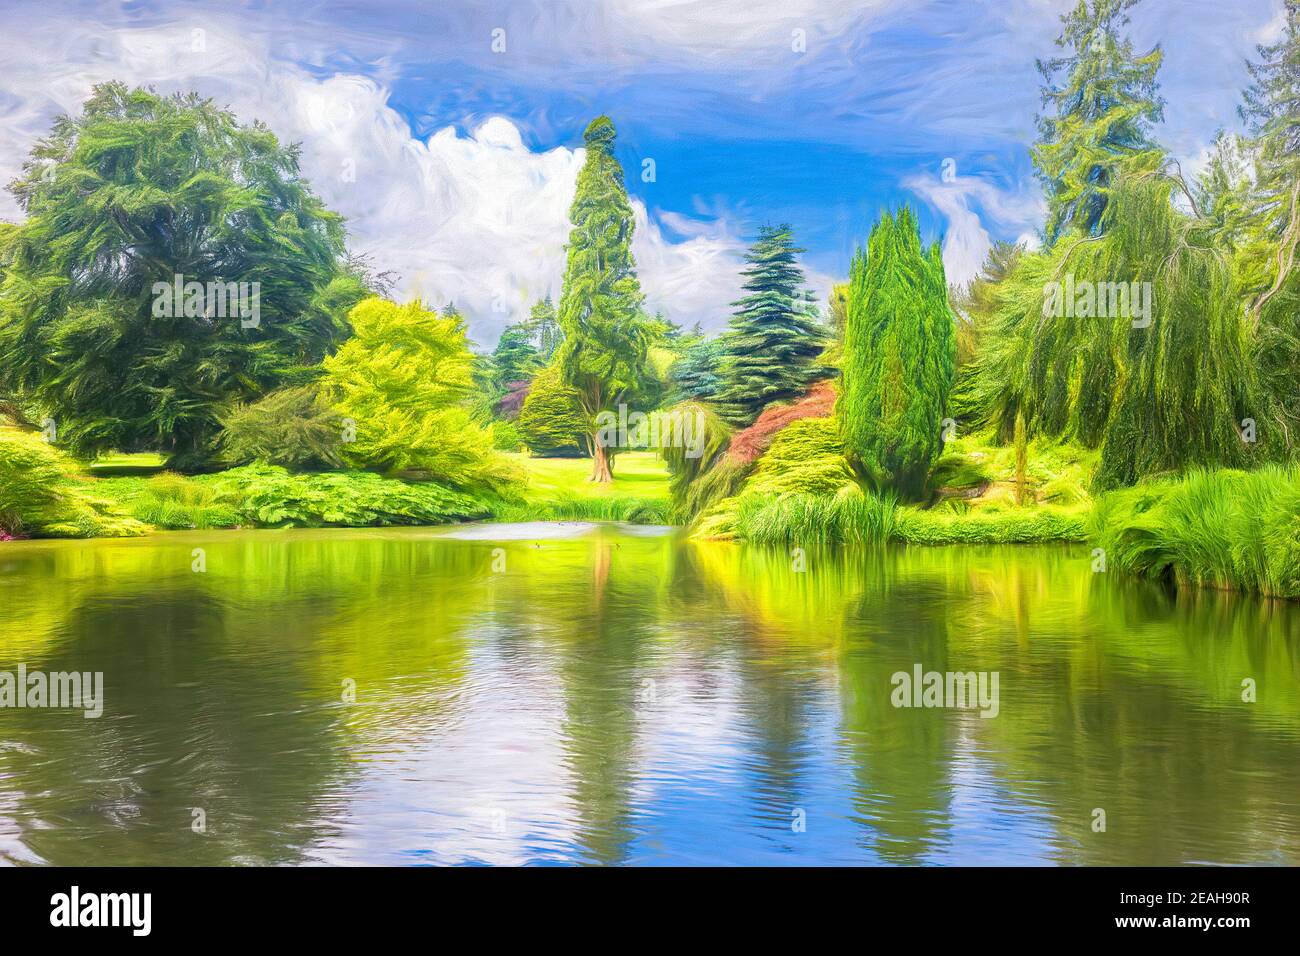 Peinture numérique d'un jardin, montrant des arbres et des buissons reflétés dans un lac. Banque D'Images